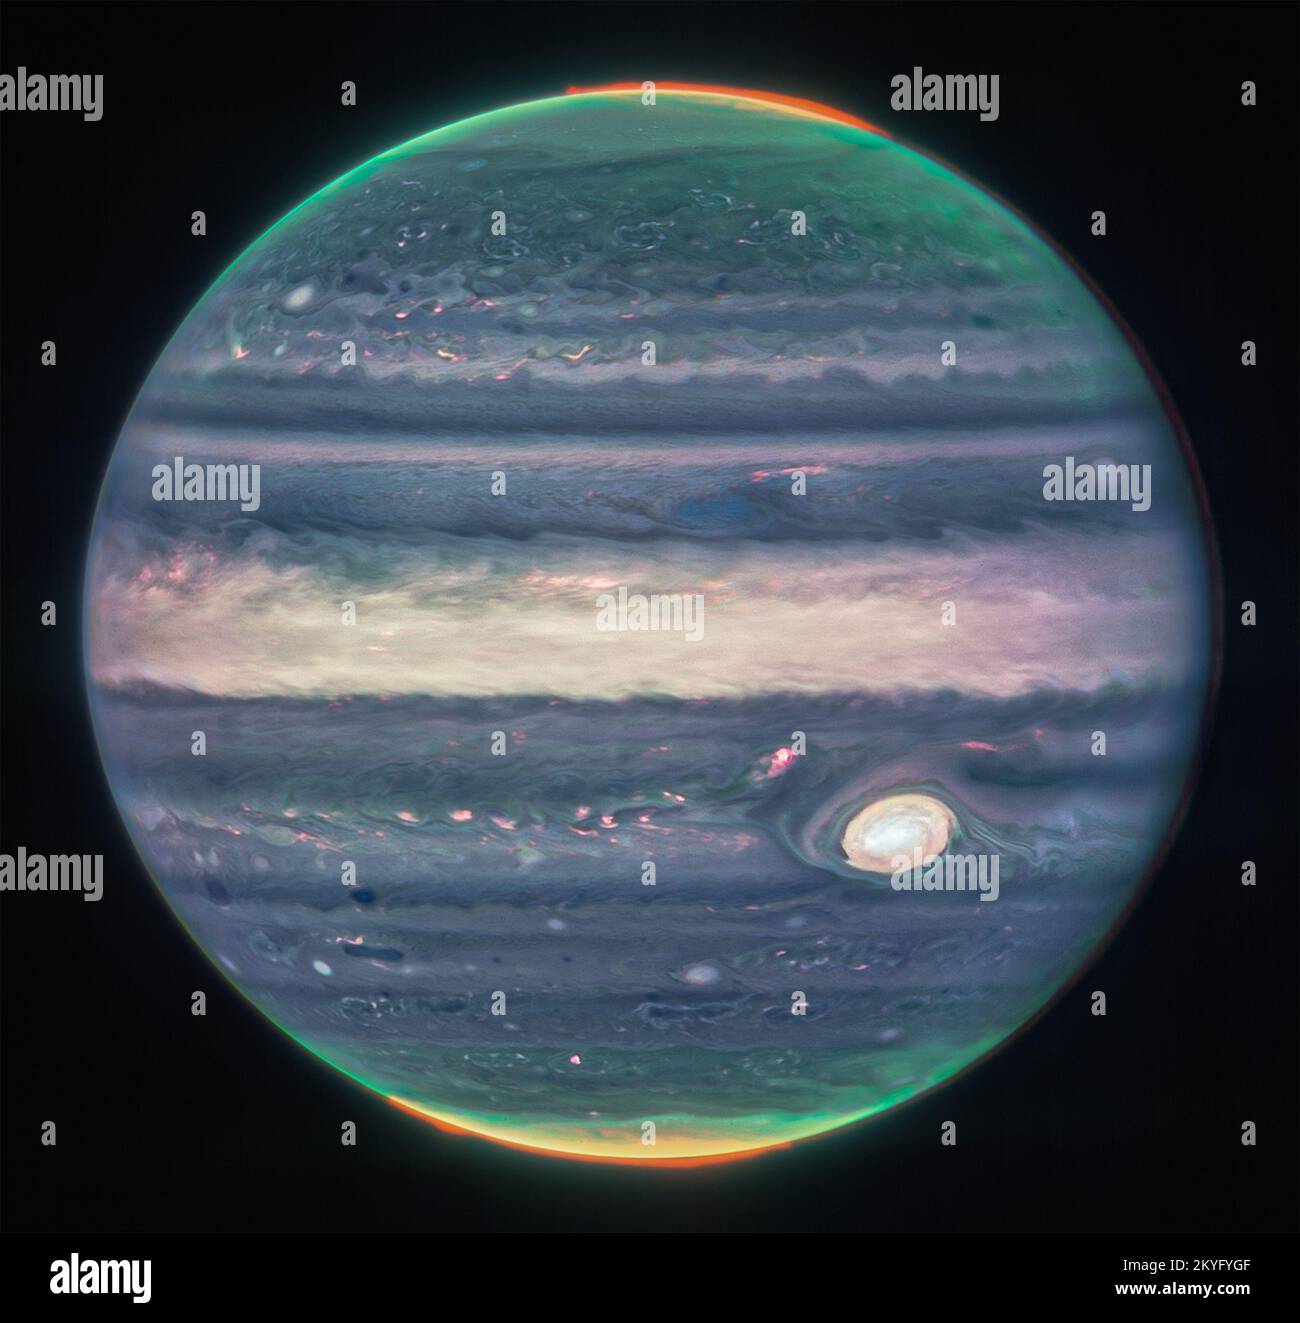 James Webb Space Telescope della NASA ha catturato nuove immagini di Giove, mostrando le tempeste giganti del pianeta, i venti potenti, le aurore e le condizioni estreme di temperatura e pressione. Le due immagini provengono dalla Near-Infrared Camera dell'osservatorio (NIRCam), che ha tre filtri infrarossi specializzati che mostrano i dettagli del pianeta. Poiché la luce infrarossa è invisibile all'occhio umano, la luce è stata mappata sullo spettro visibile. Generalmente, le lunghezze d'onda più lunghe appaiono più rosse, e le lunghezze d'onda più corte sono mostrate come più blu. Gli scienziati hanno collaborato con lo scienziato cittadino Judy SC Foto Stock